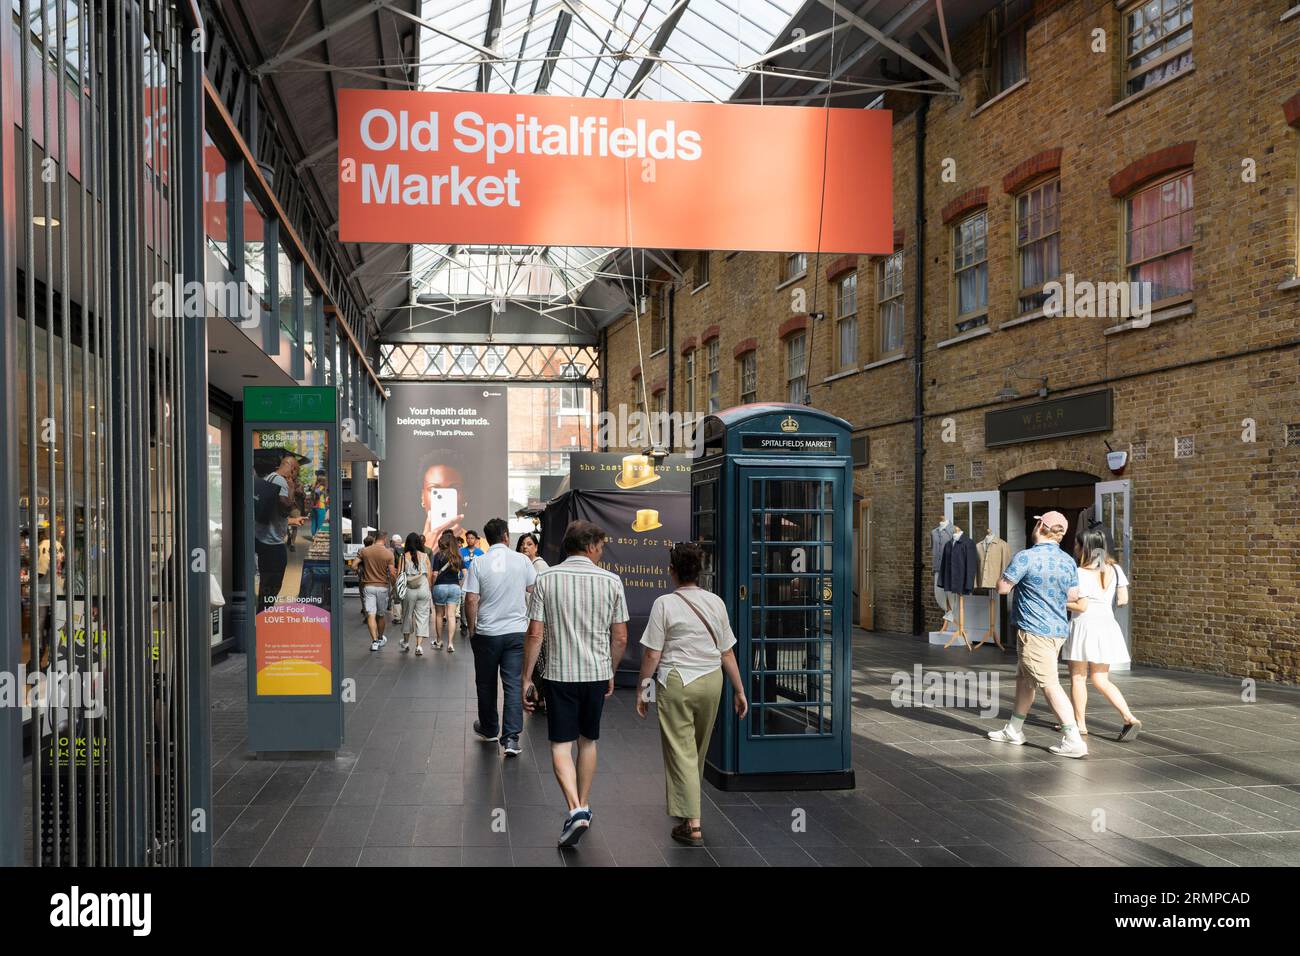 Les gens marchent à travers le marché couvert Old Spitalfields avec un grand panneau publicitaire suspendu au-dessus et une boîte téléphonique verte. Londres, Angleterre Banque D'Images